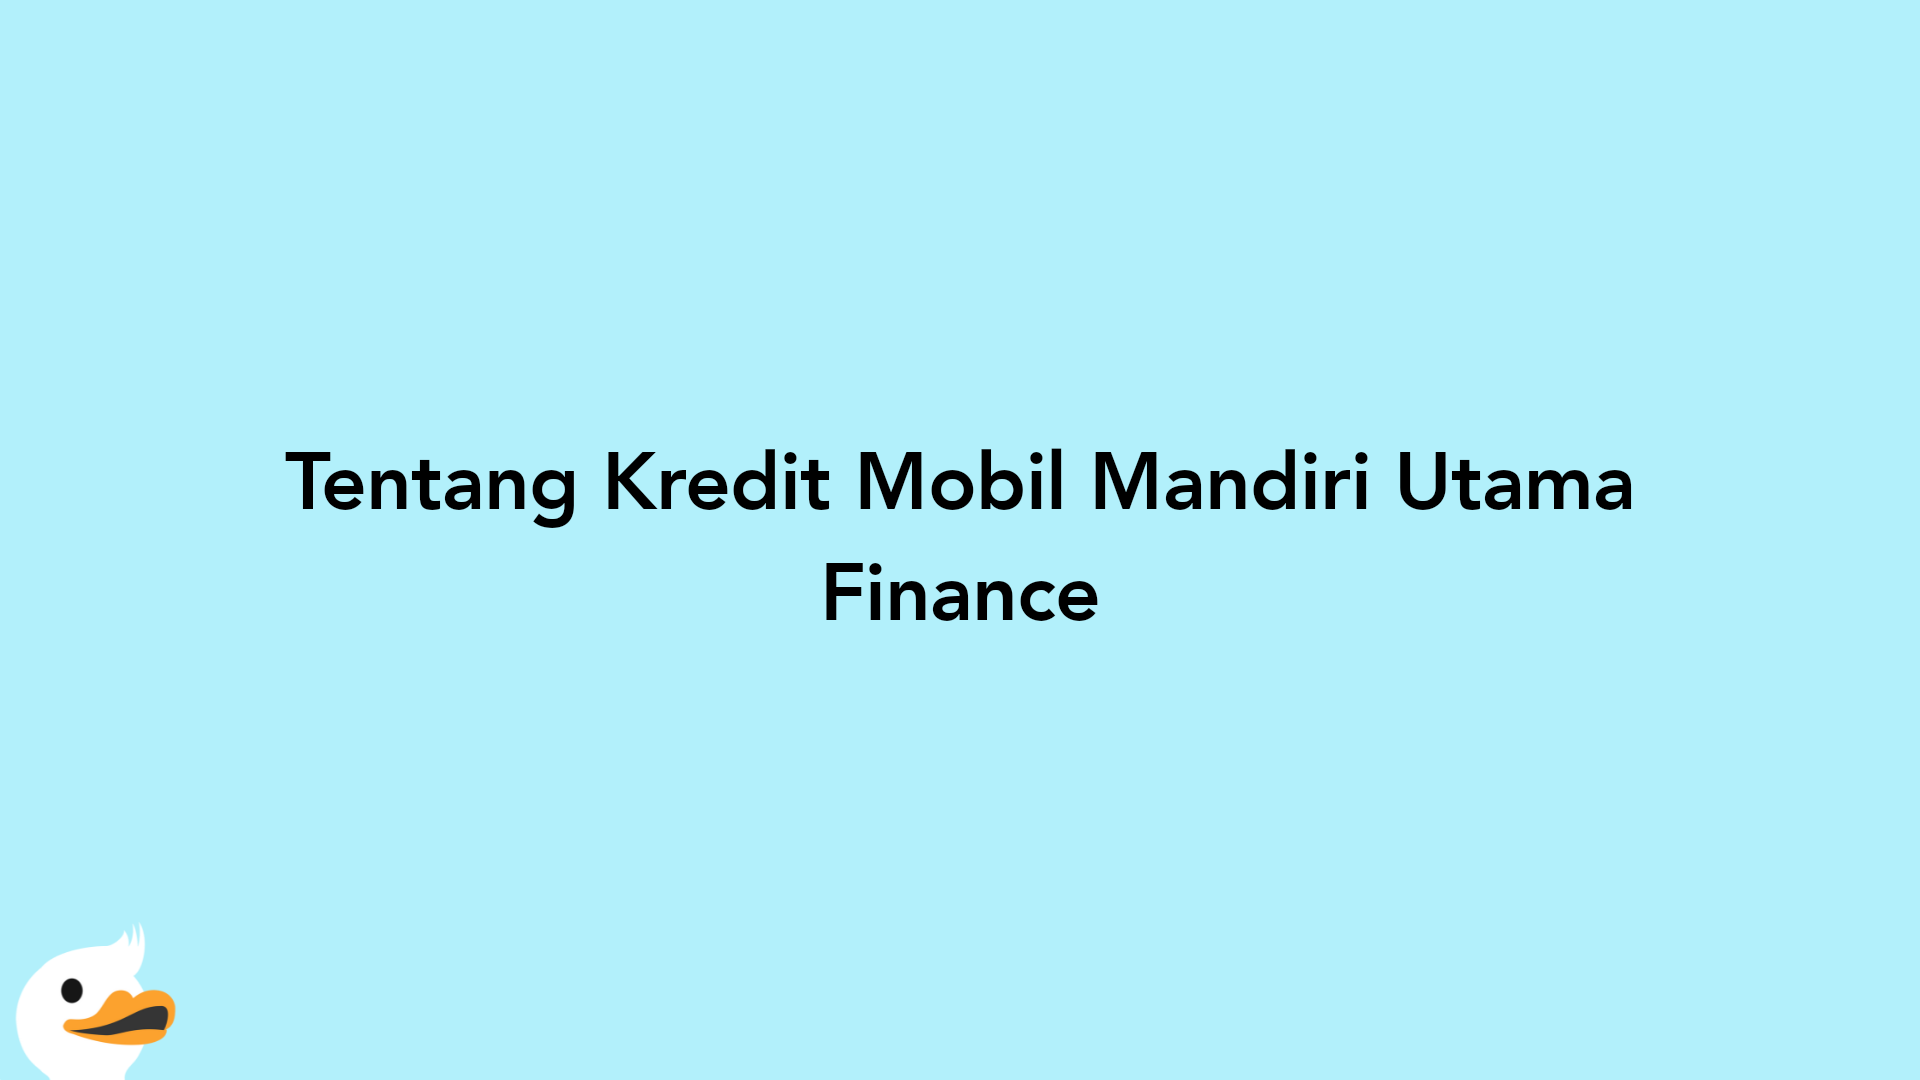 Tentang Kredit Mobil Mandiri Utama Finance